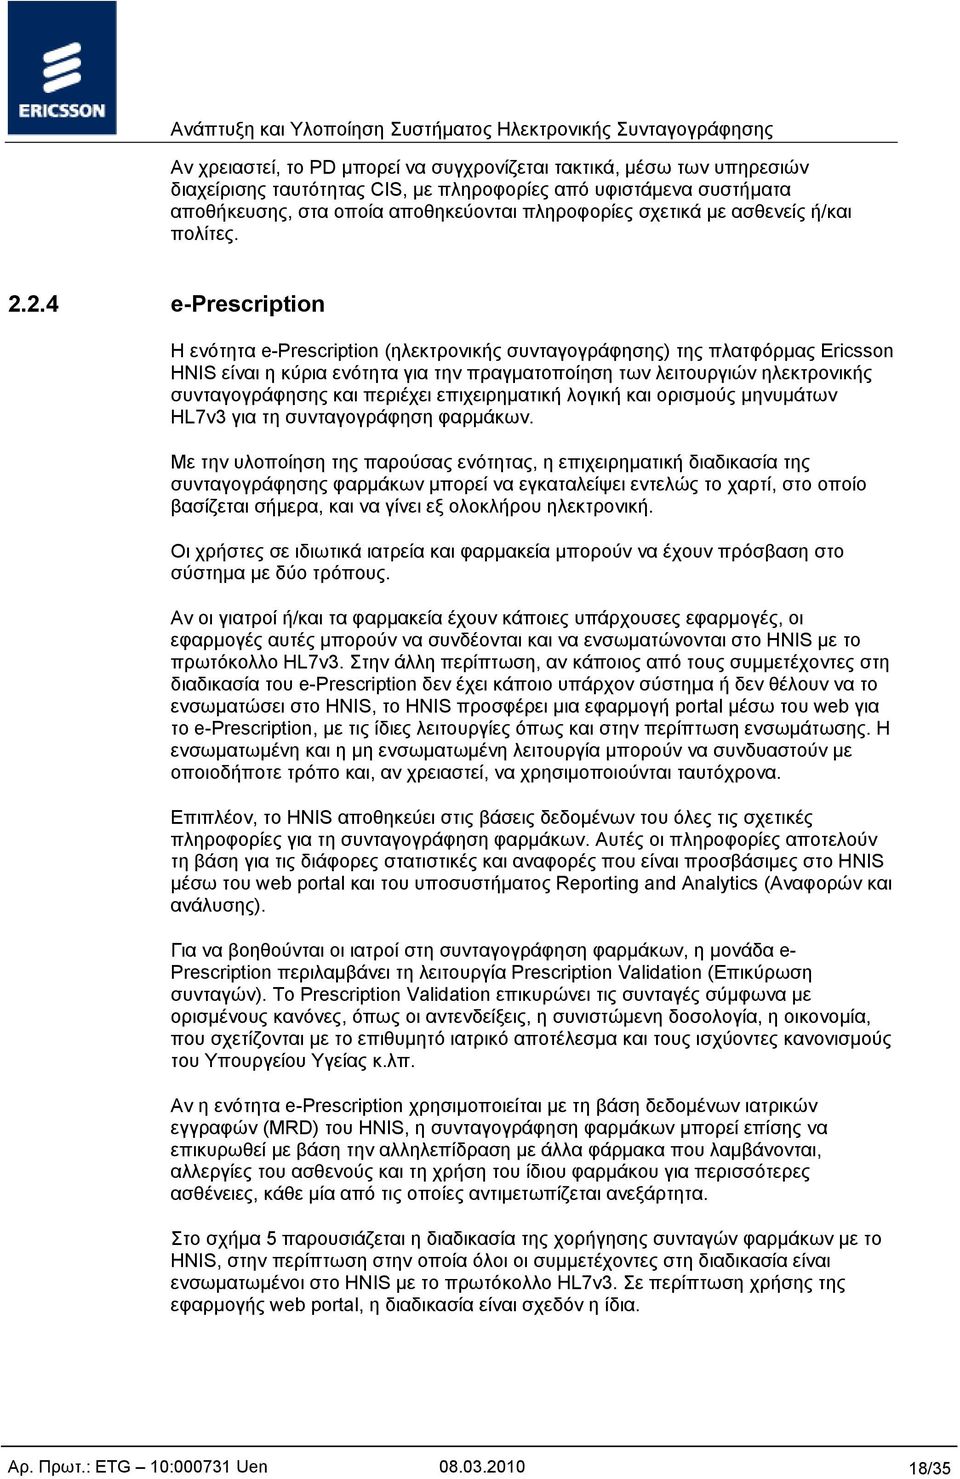 2.4 e-prescription Η ενότητα e-prescription (ηλεκτρονικής συνταγογράφησης) της πλατφόρμας Ericsson HNIS είναι η κύρια ενότητα για την πραγματοποίηση των λειτουργιών ηλεκτρονικής συνταγογράφησης και